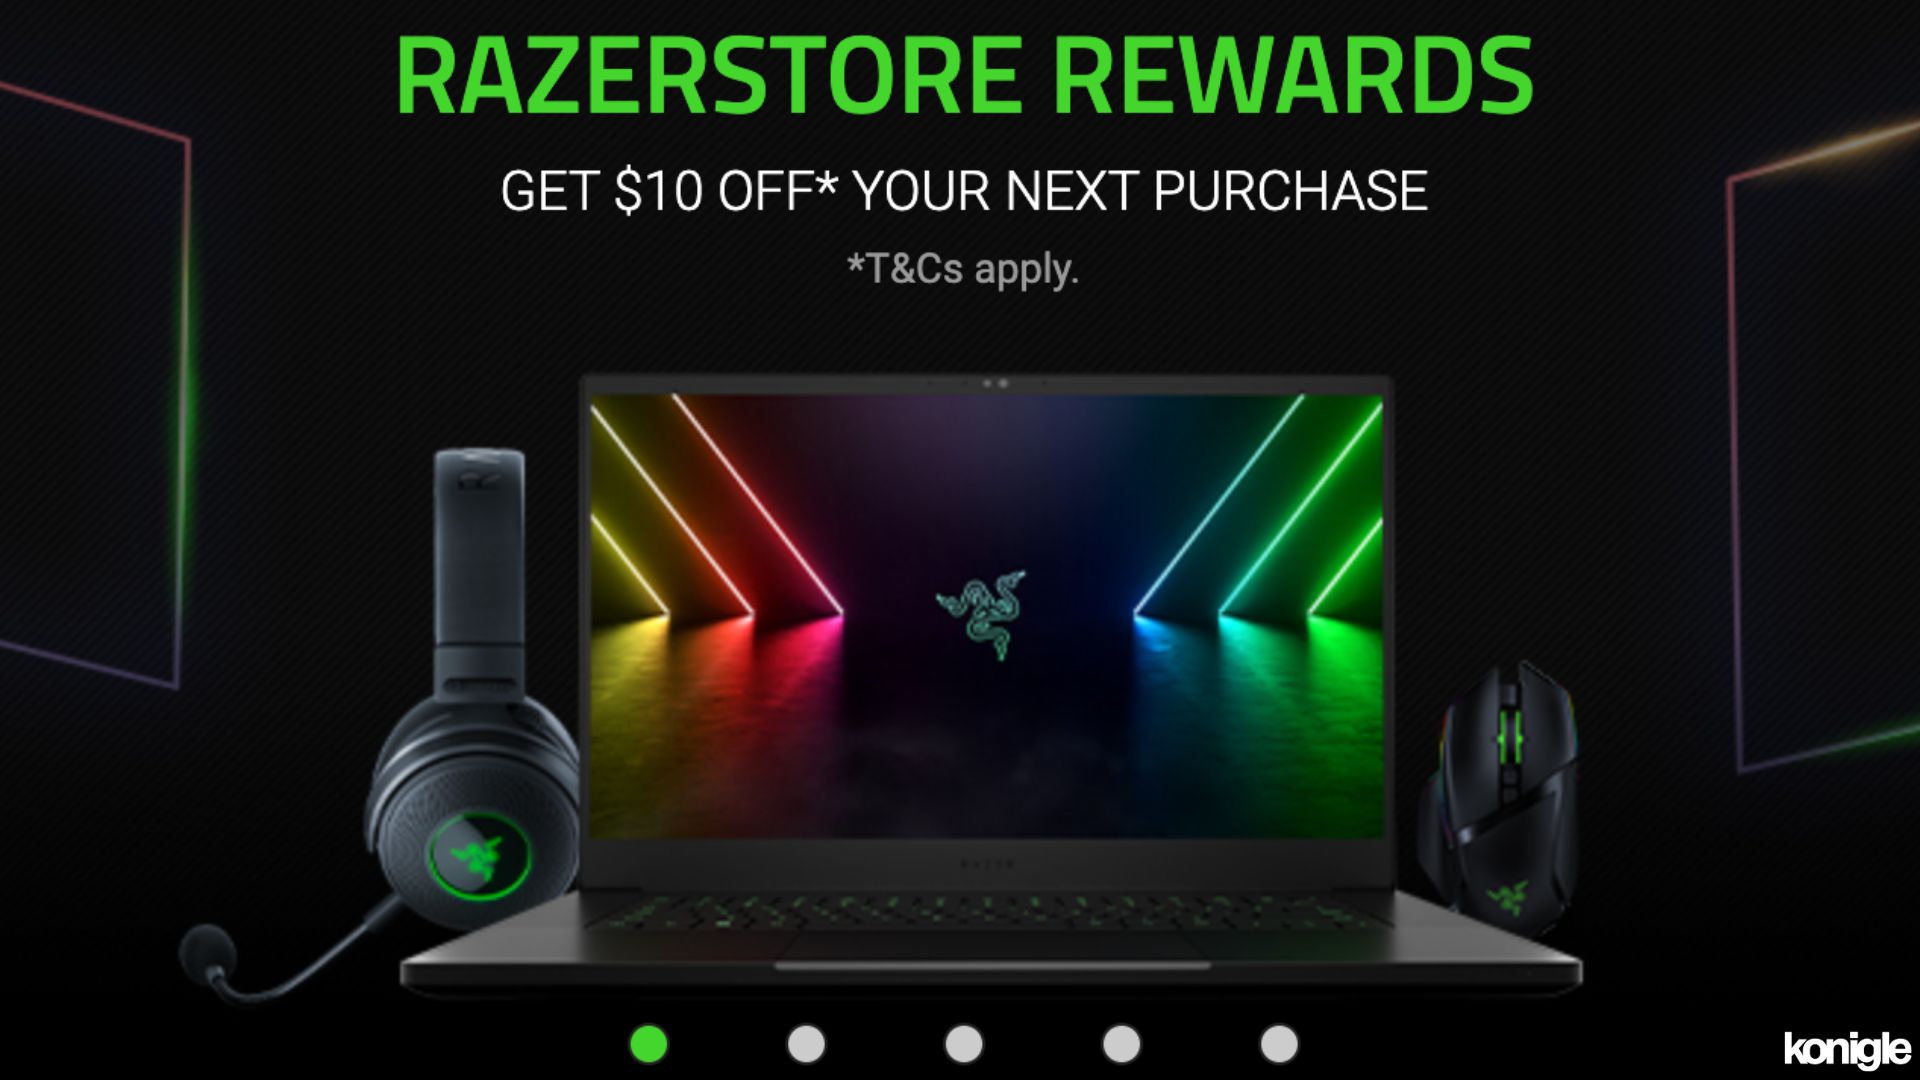 RazerStore Rewards